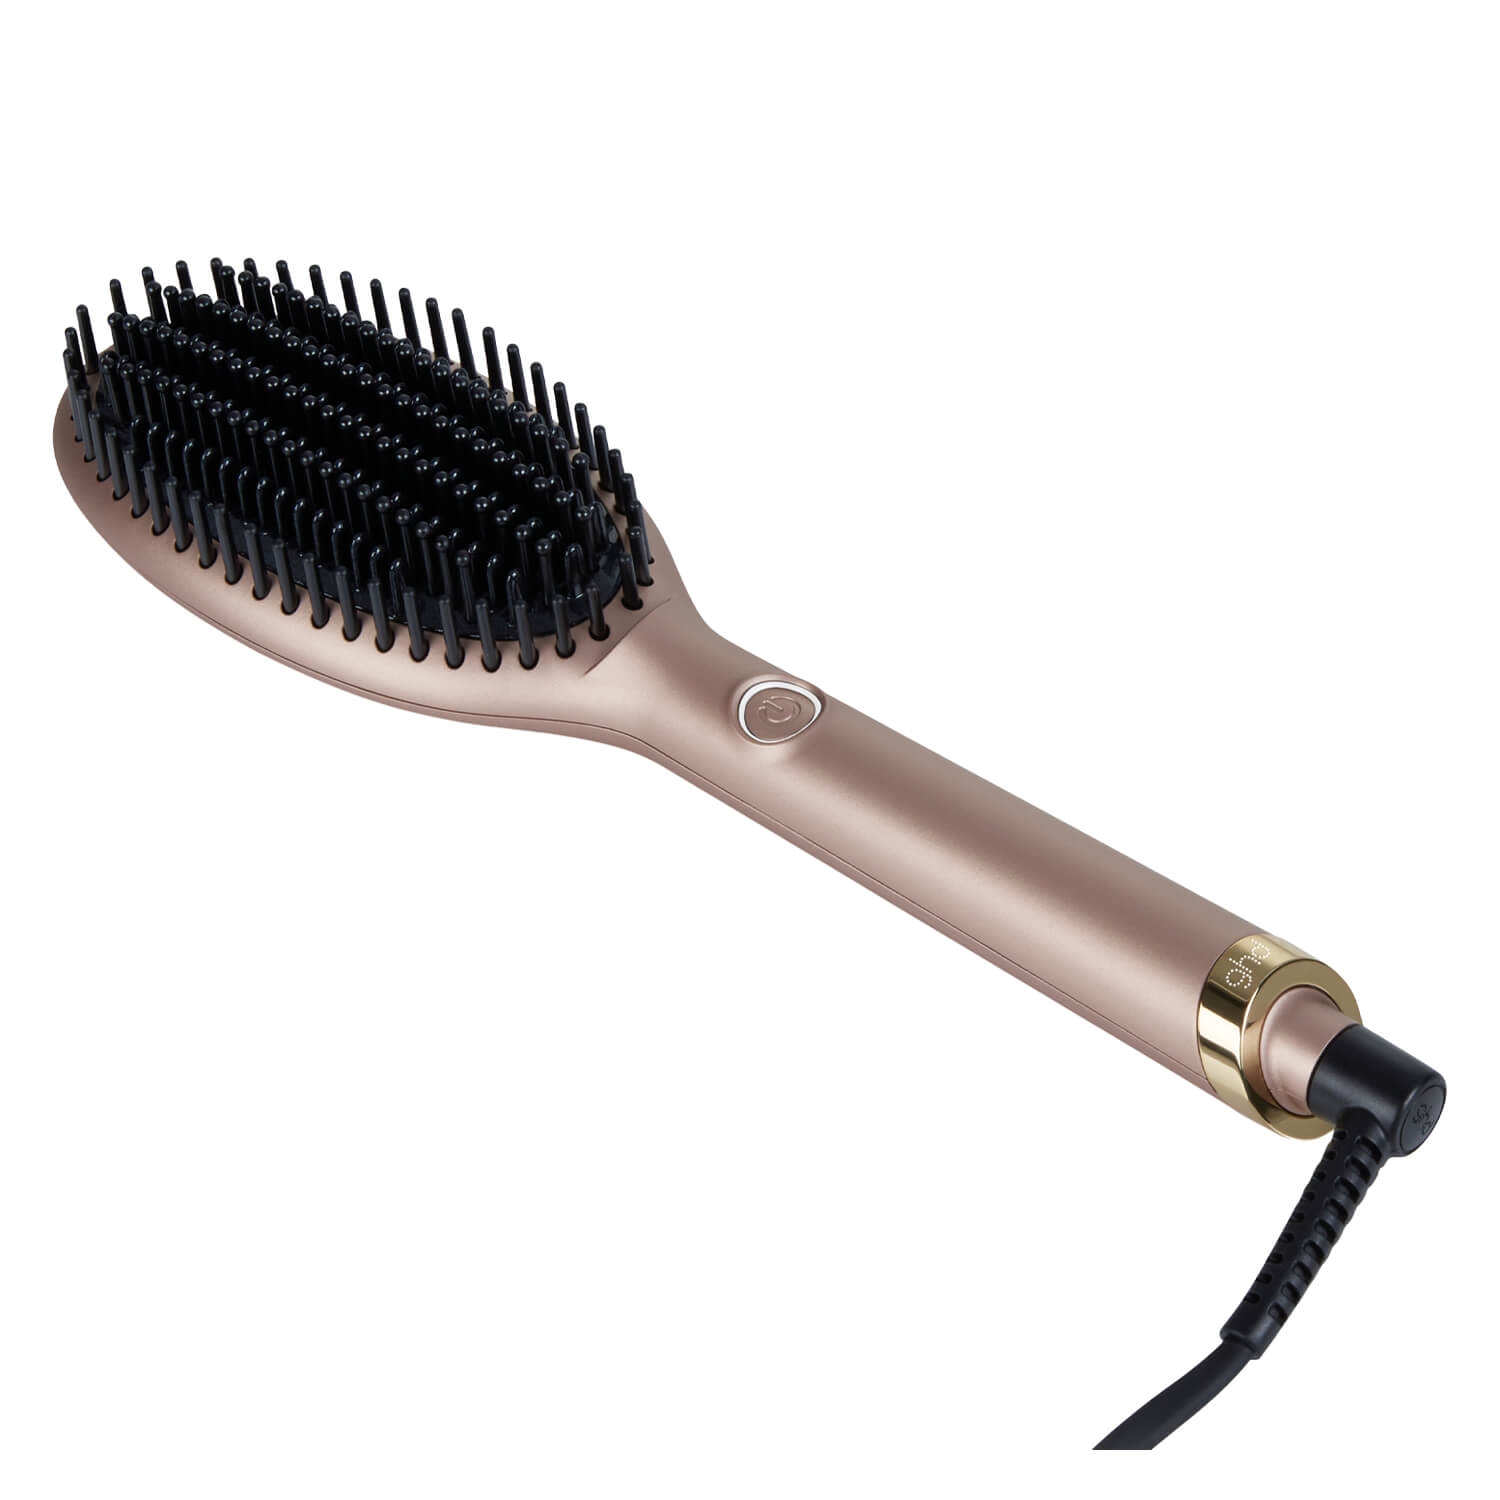 Produktbild von ghd Brushes - Glide Hot Brush Sun-Kissed Bronze Limited Edition